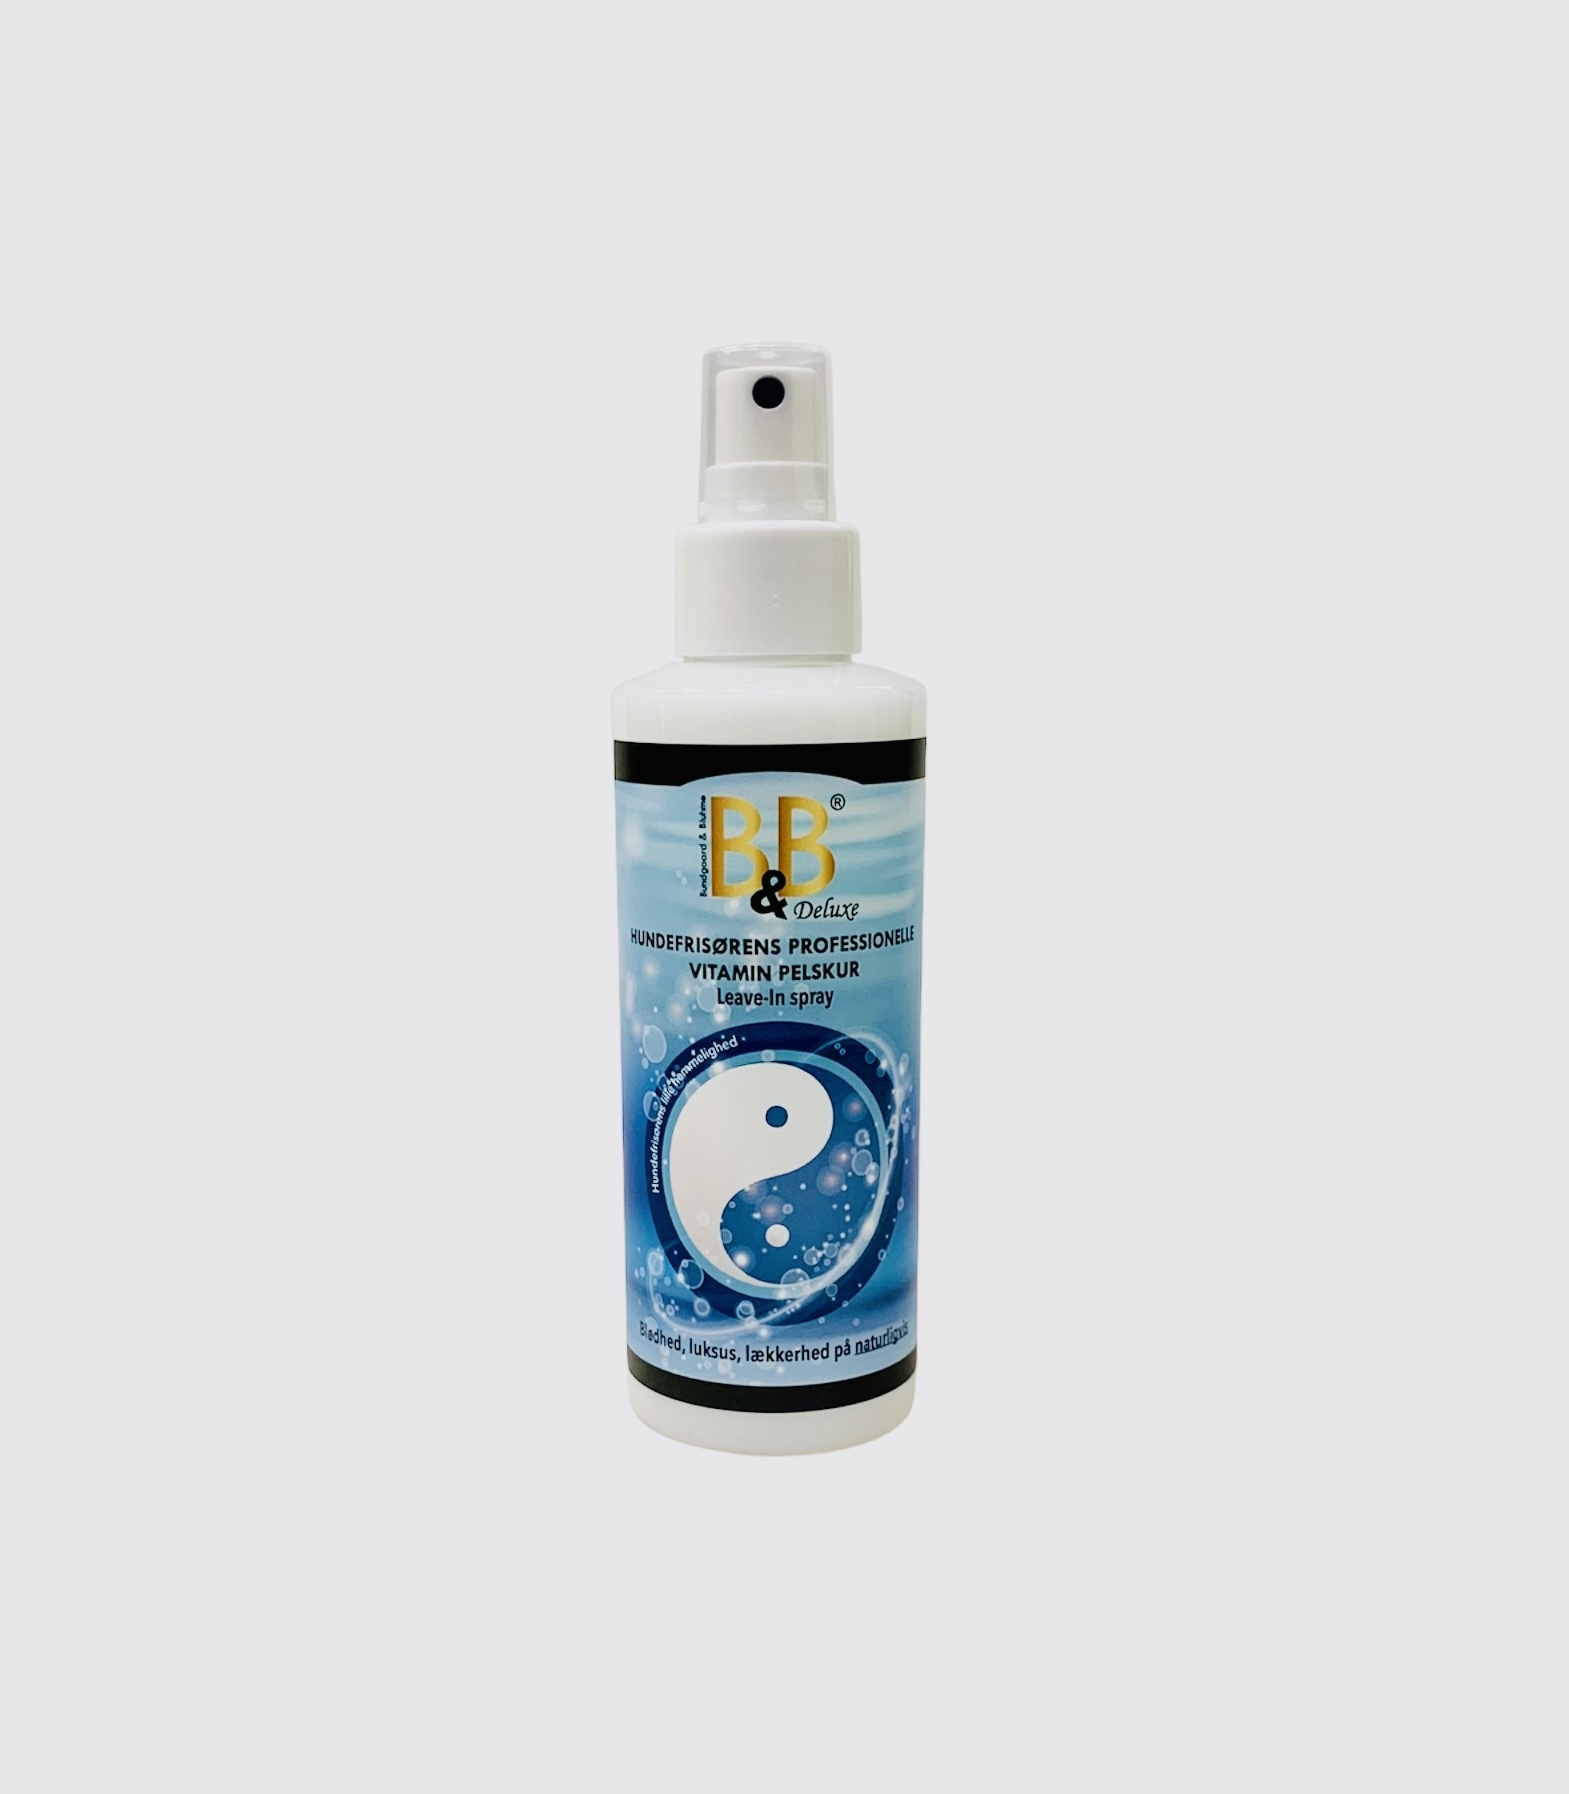 Billede af B&B Leave-In spray Vitamin pelskur.